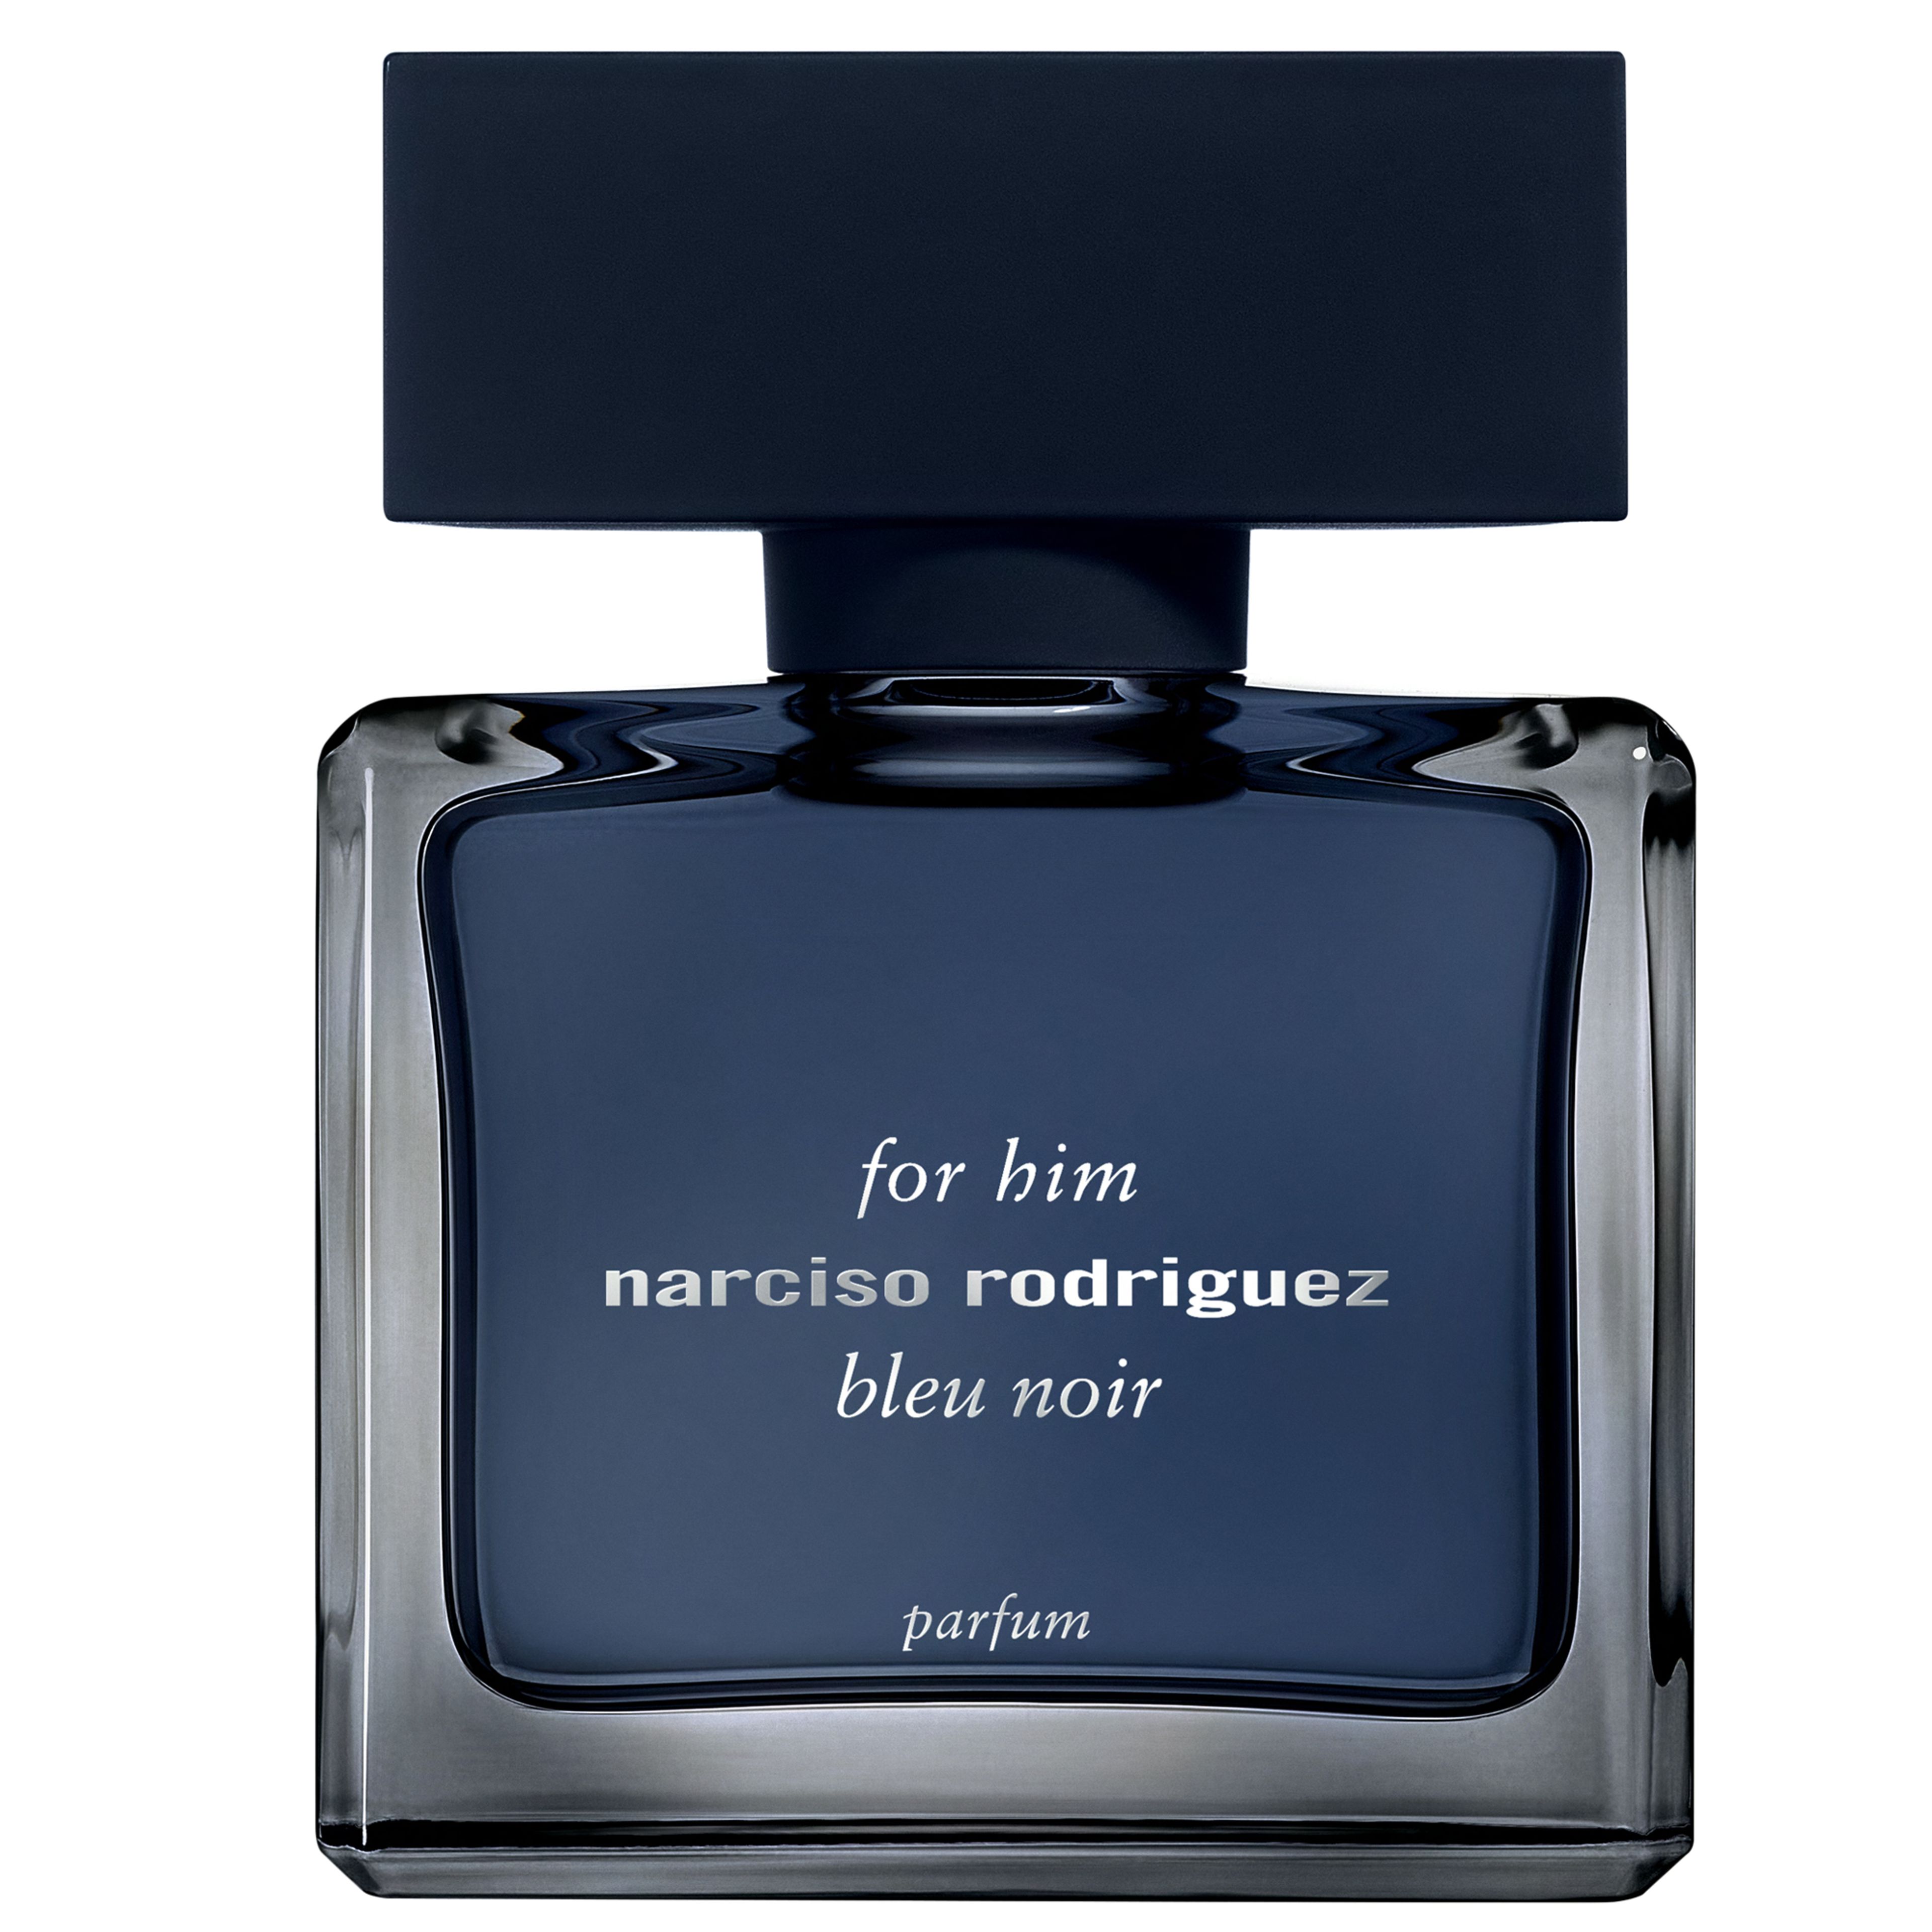 Narciso Rodriguez For Him Bleu Noir Parfum 1